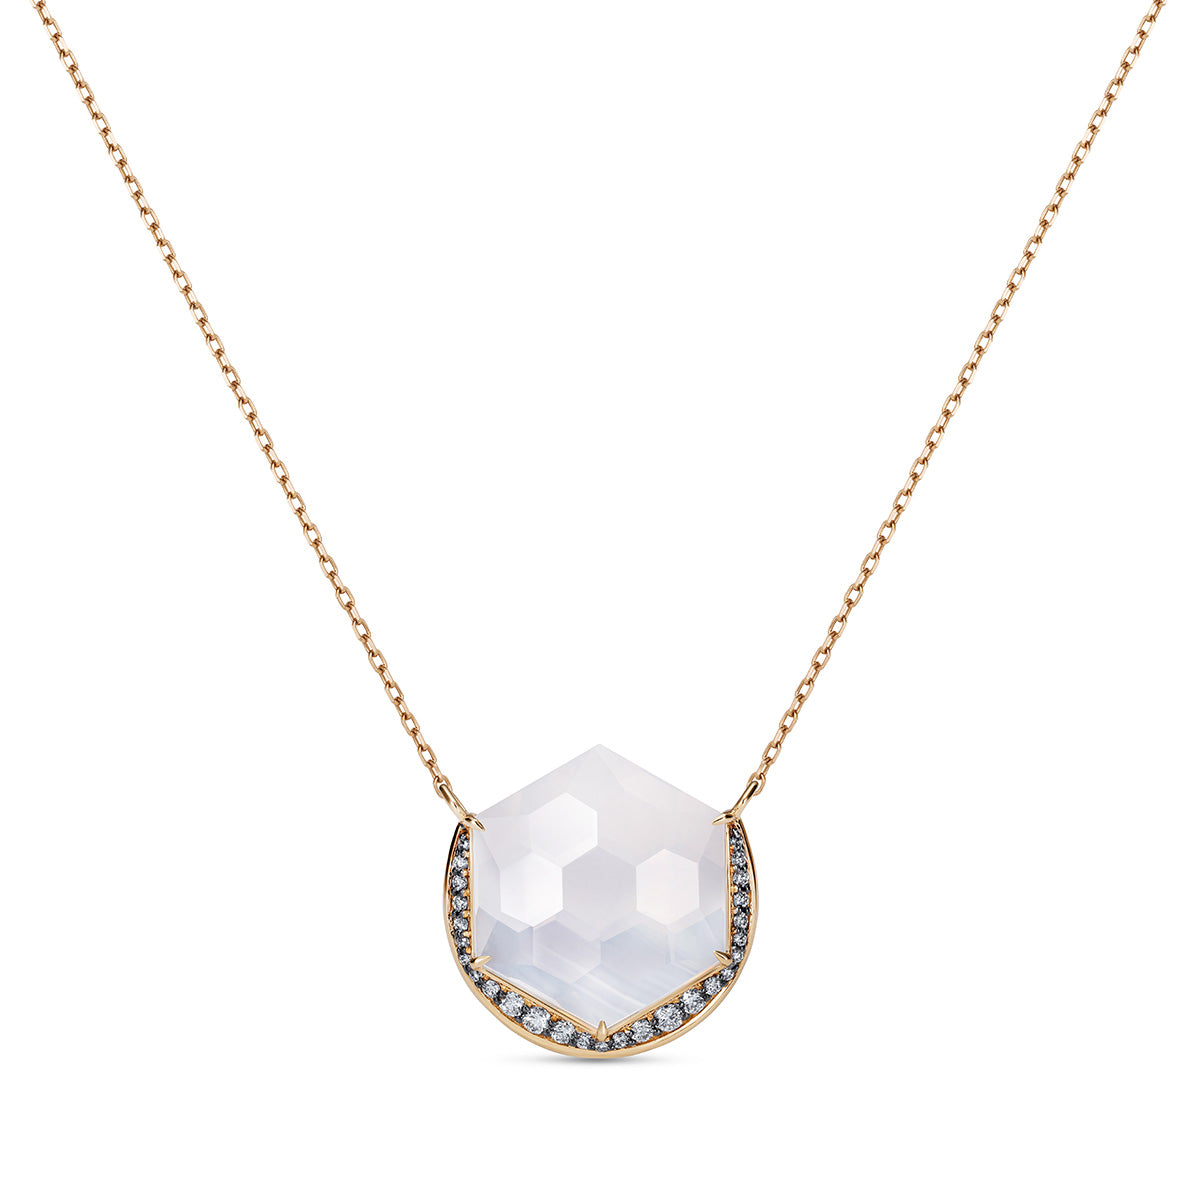 Noor Fares Blue Moon Quartz Necklace with Diamond Pavé  on a 45cm chain